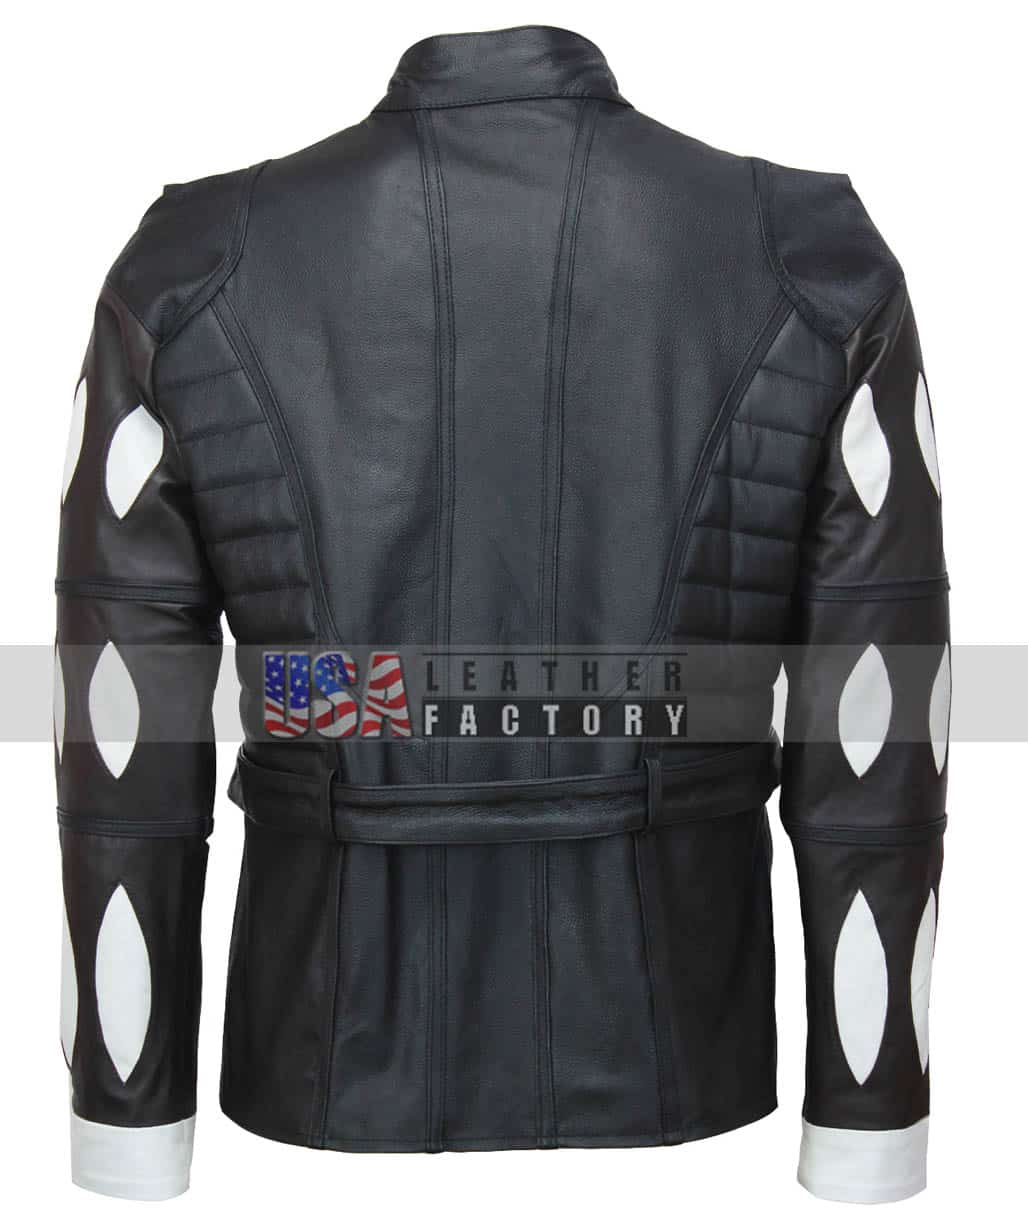 baldurs-gate-3-astarion-cosplay-jacket-back